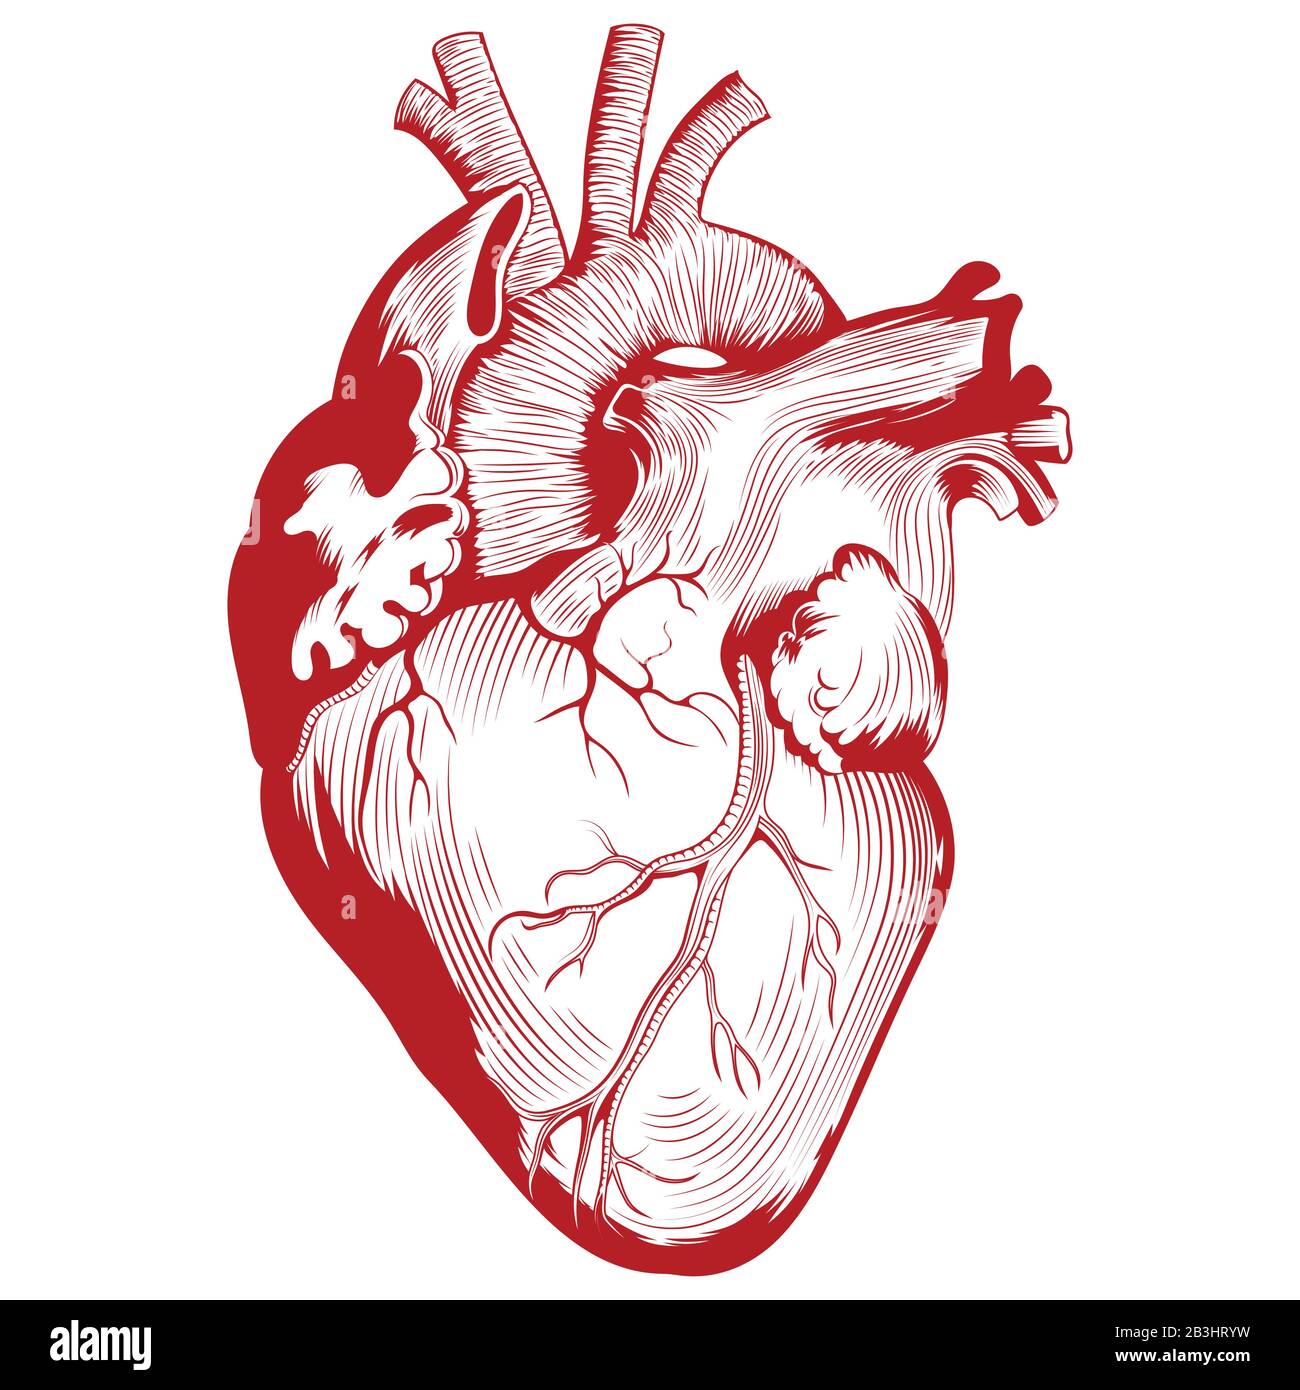 Illustrazione medica anatomica, illustrazione dell'organo del cuore umano Illustrazione Vettoriale